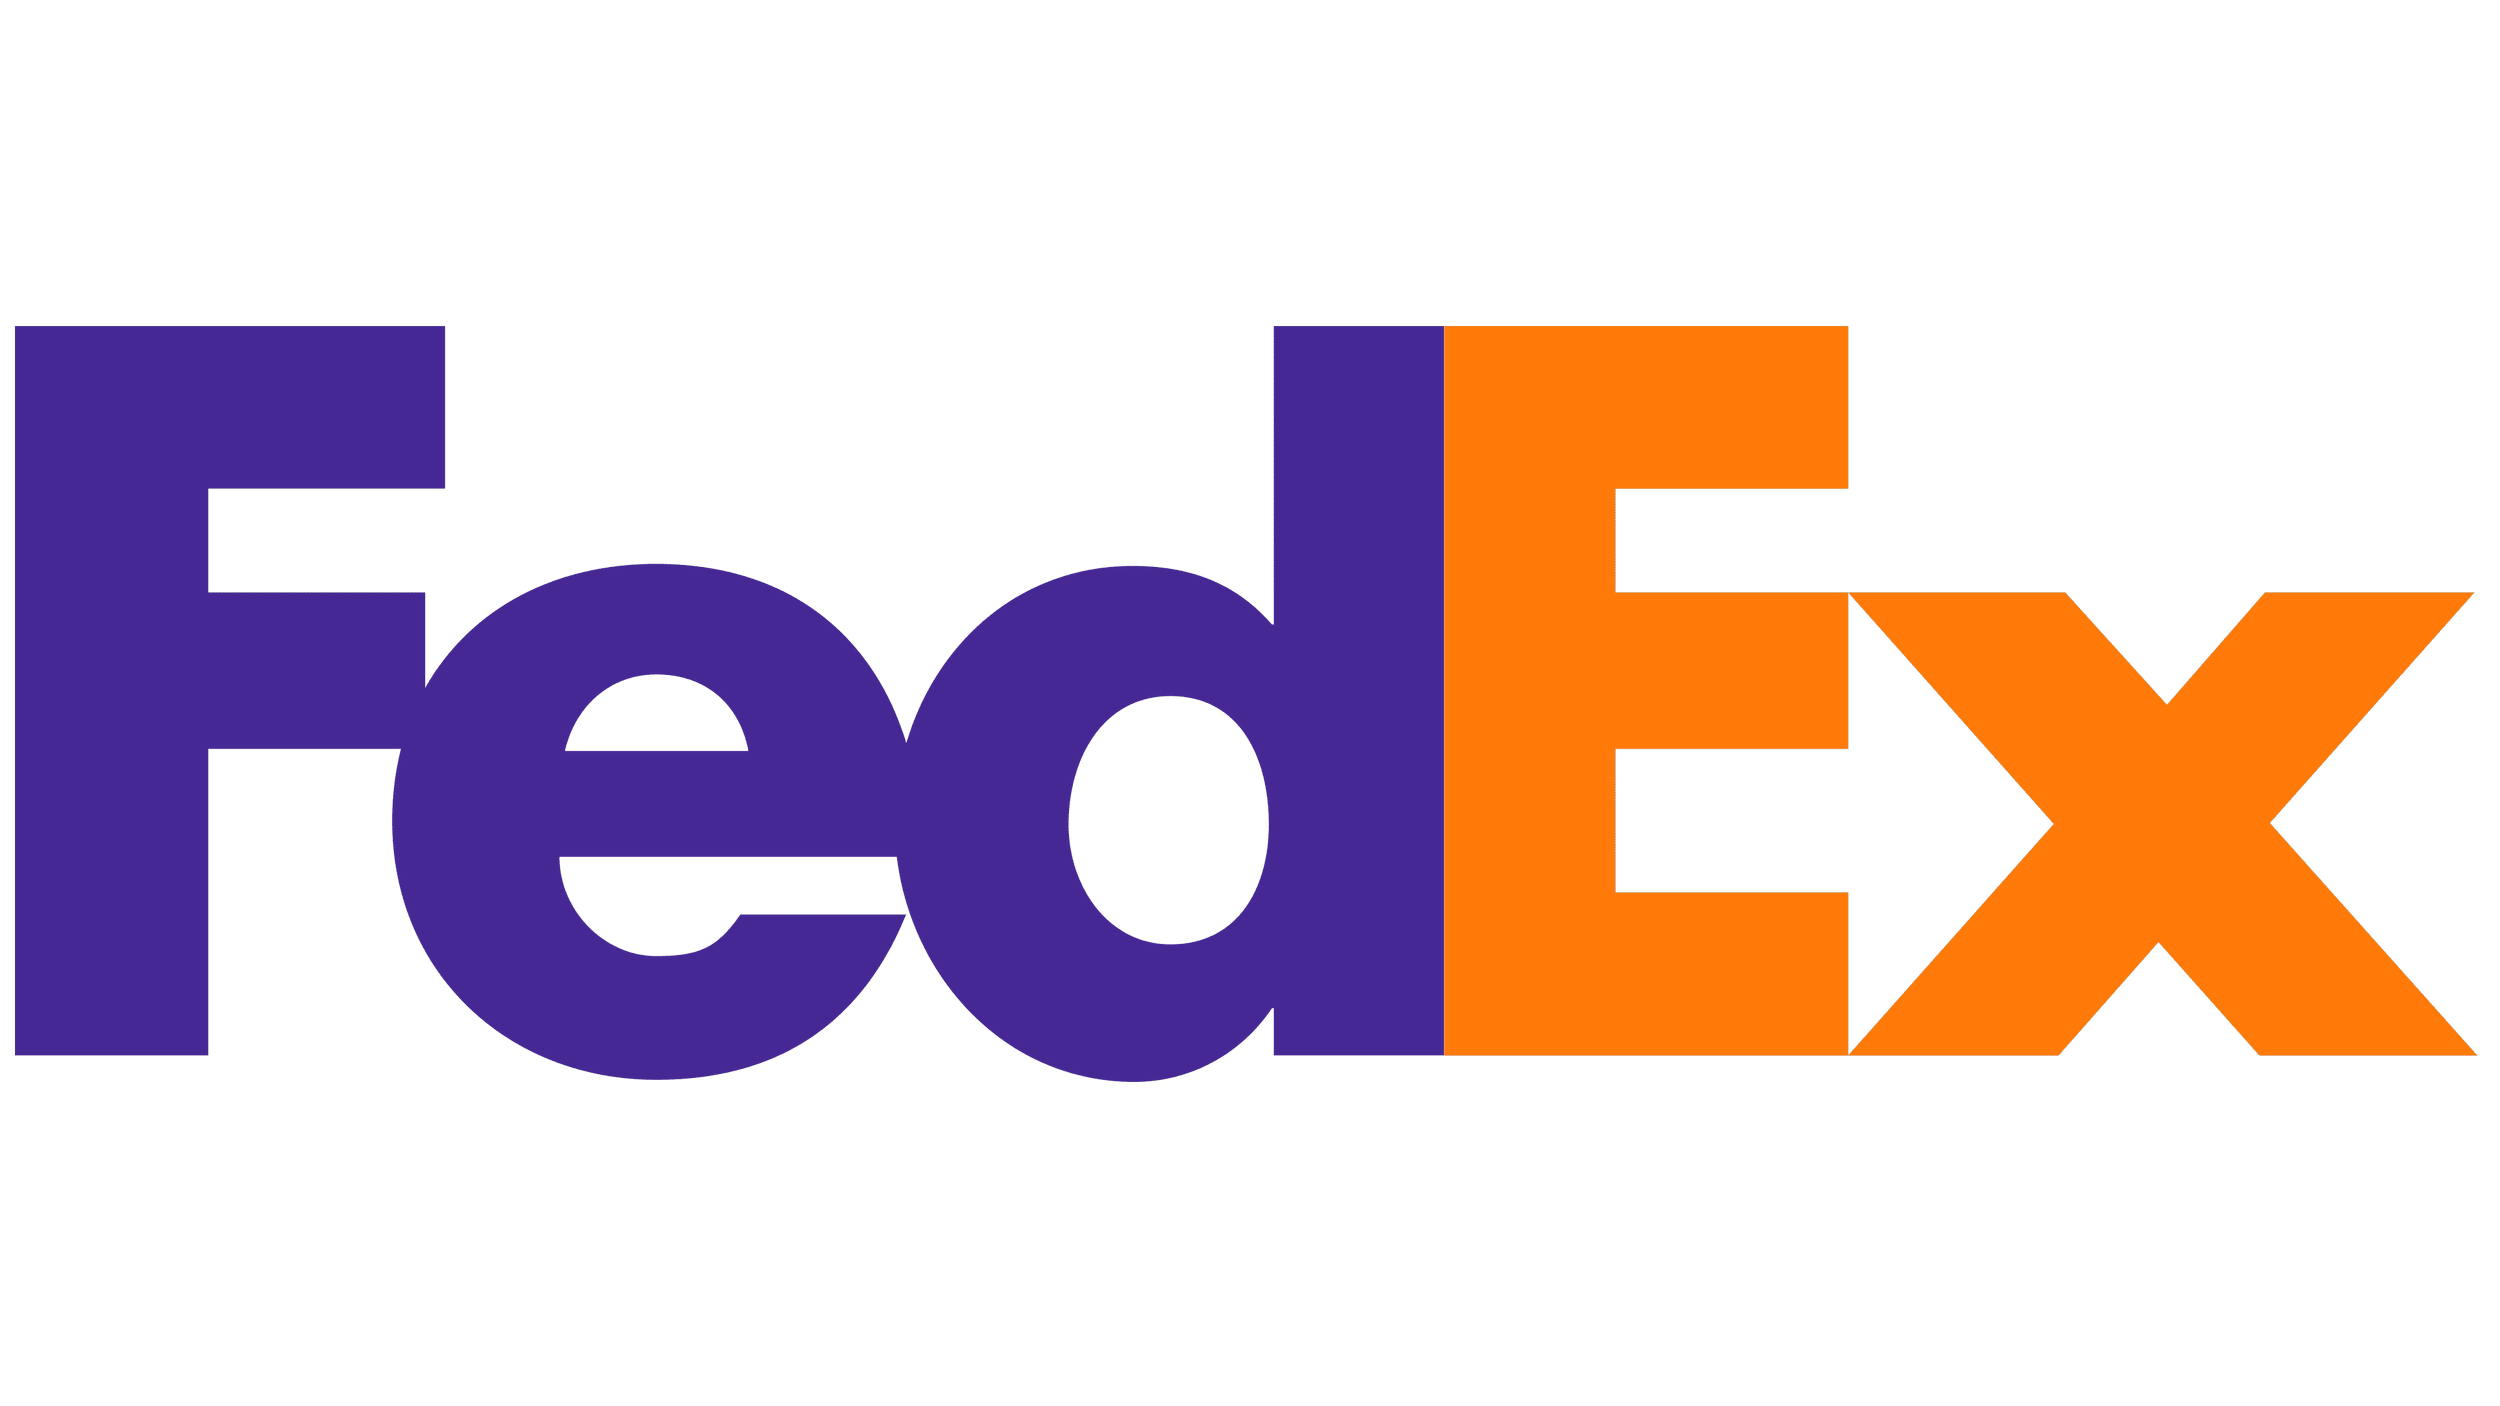 FedEx-Logo.png